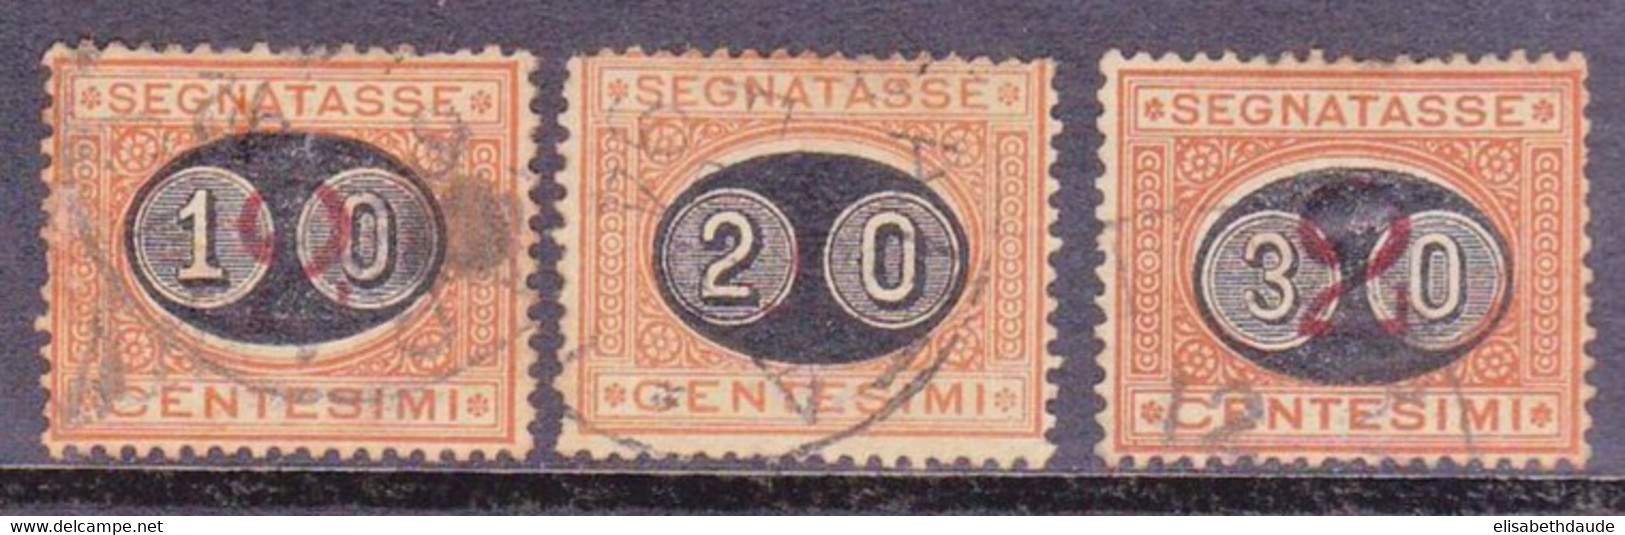 ITALIE - 1890 - YVERT N°22/24 OBLITERES - TAXE - COTE = 57 EUROS - Used